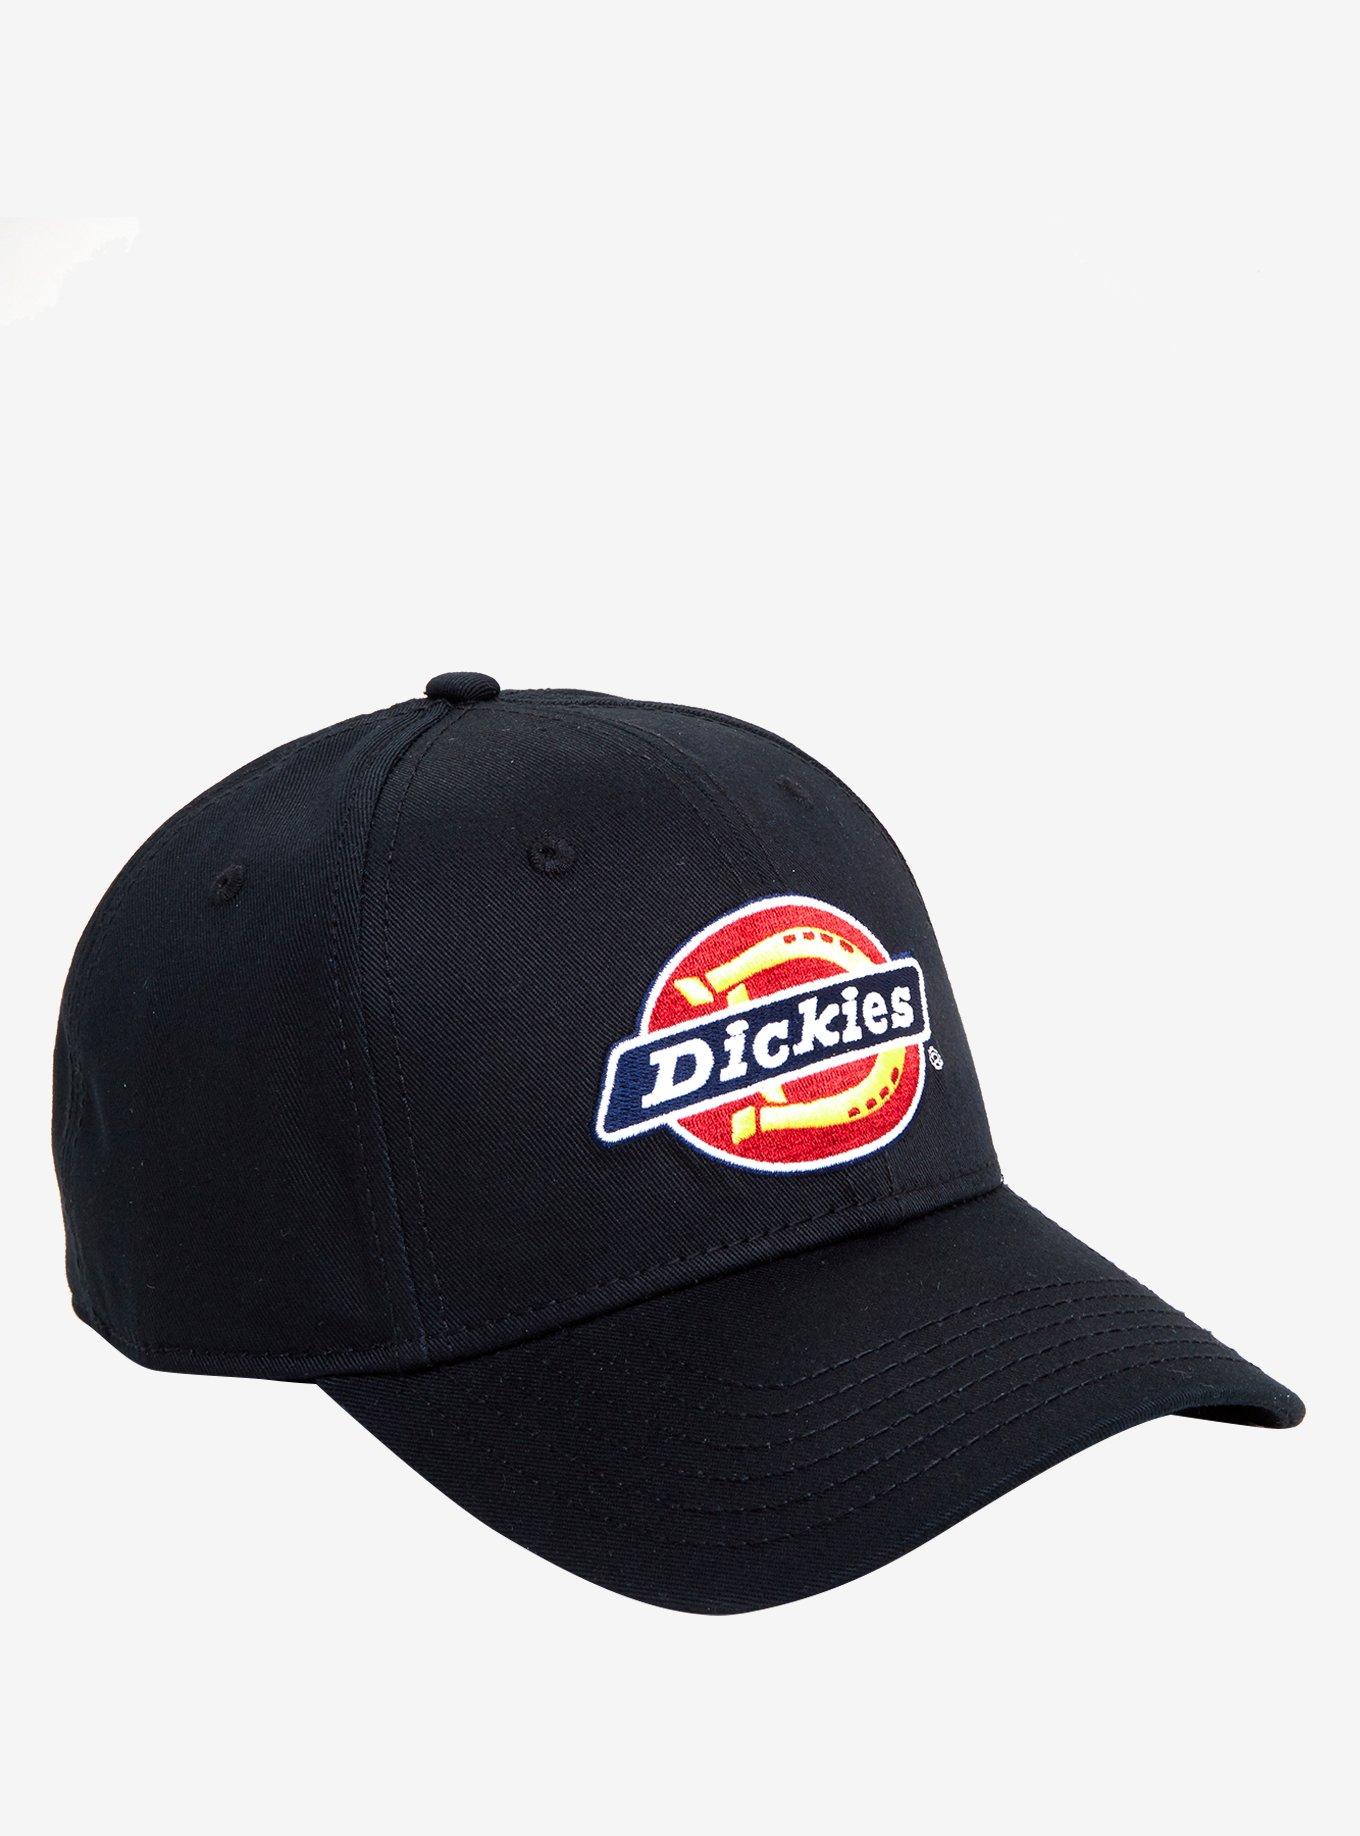 Dickies Black Hat | Hot Topic